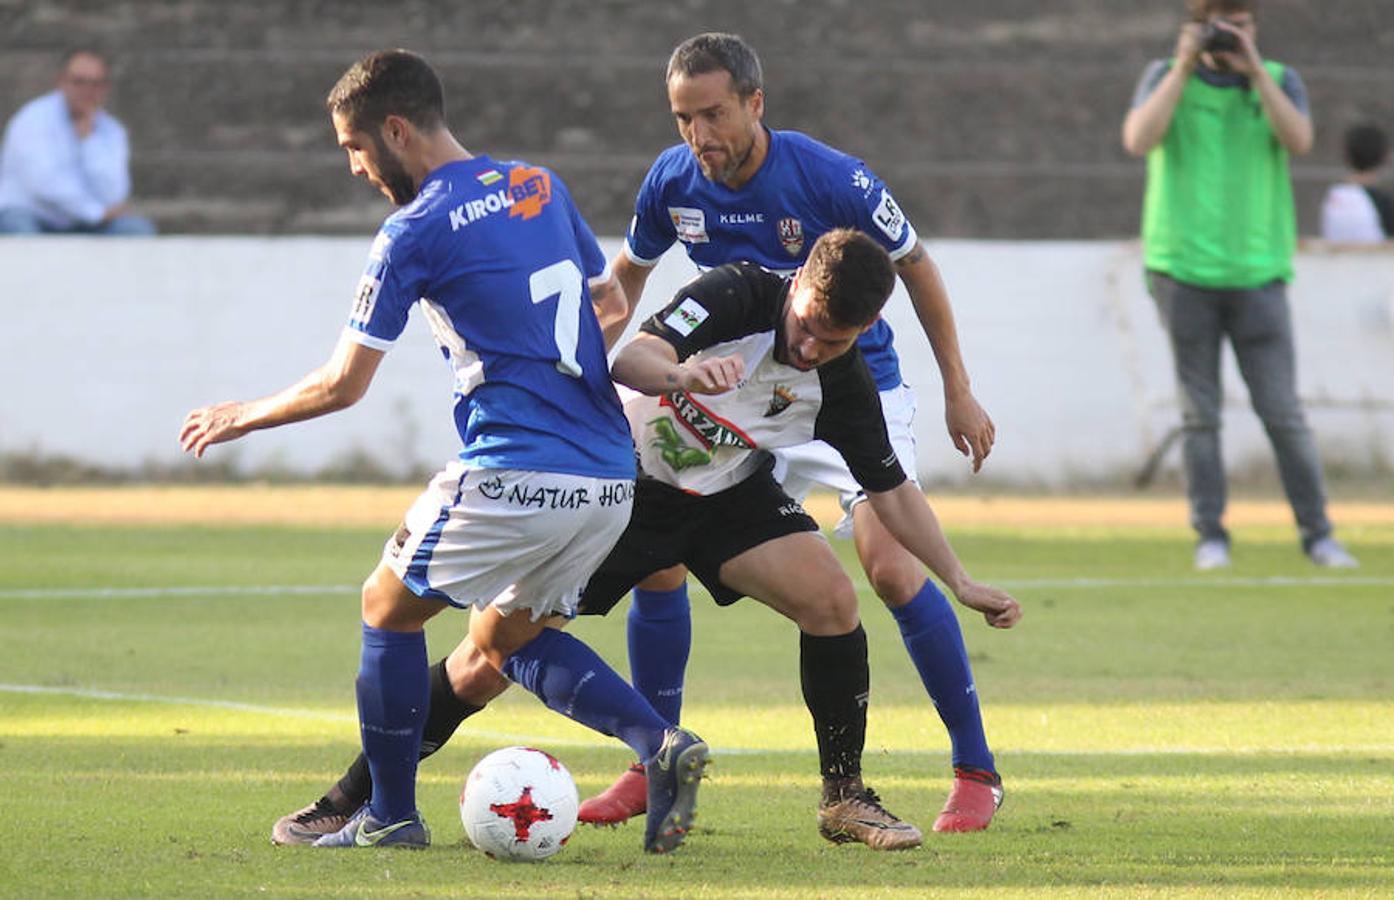 Empate sin goles de la UDL en Tudela. Los riojanos modificaron su propuesta futbolísticza para adaptarse a un rival y un campo complicados